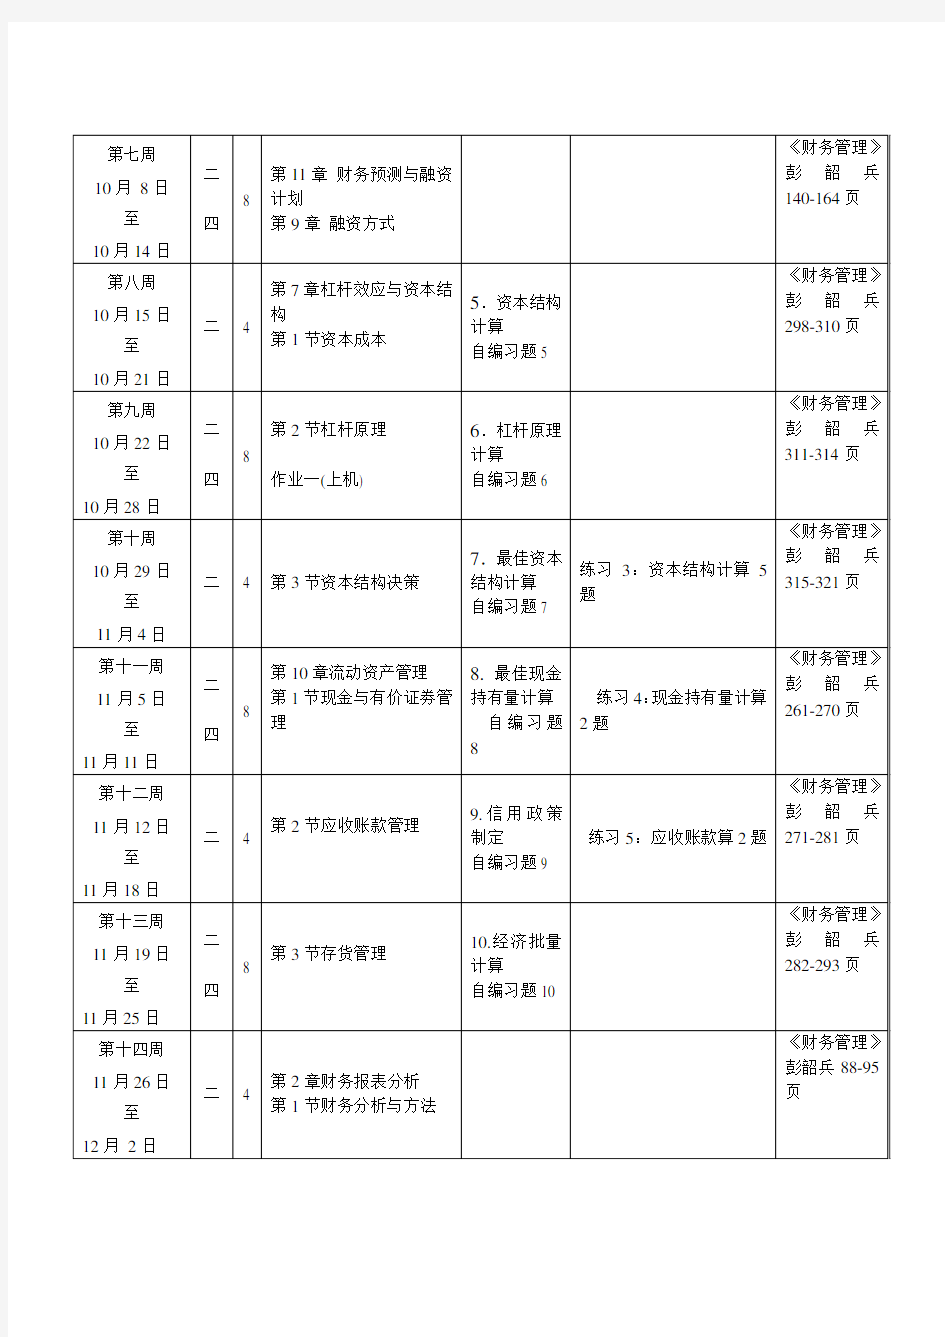 李文泽 财务管理教学日历2018-2019(1)